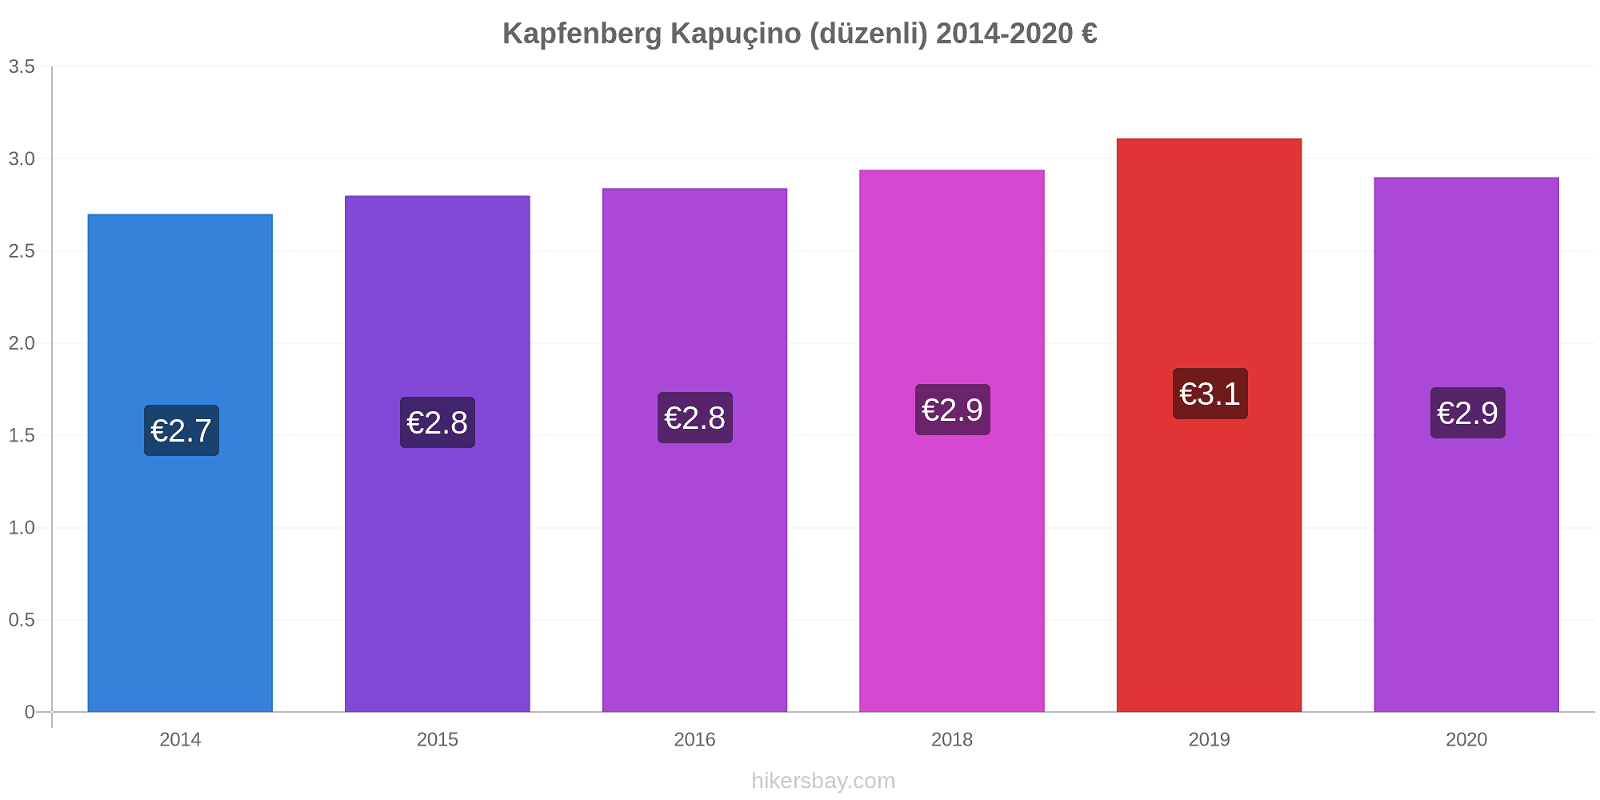 Kapfenberg fiyat değişiklikleri Kapuçino (düzenli) hikersbay.com